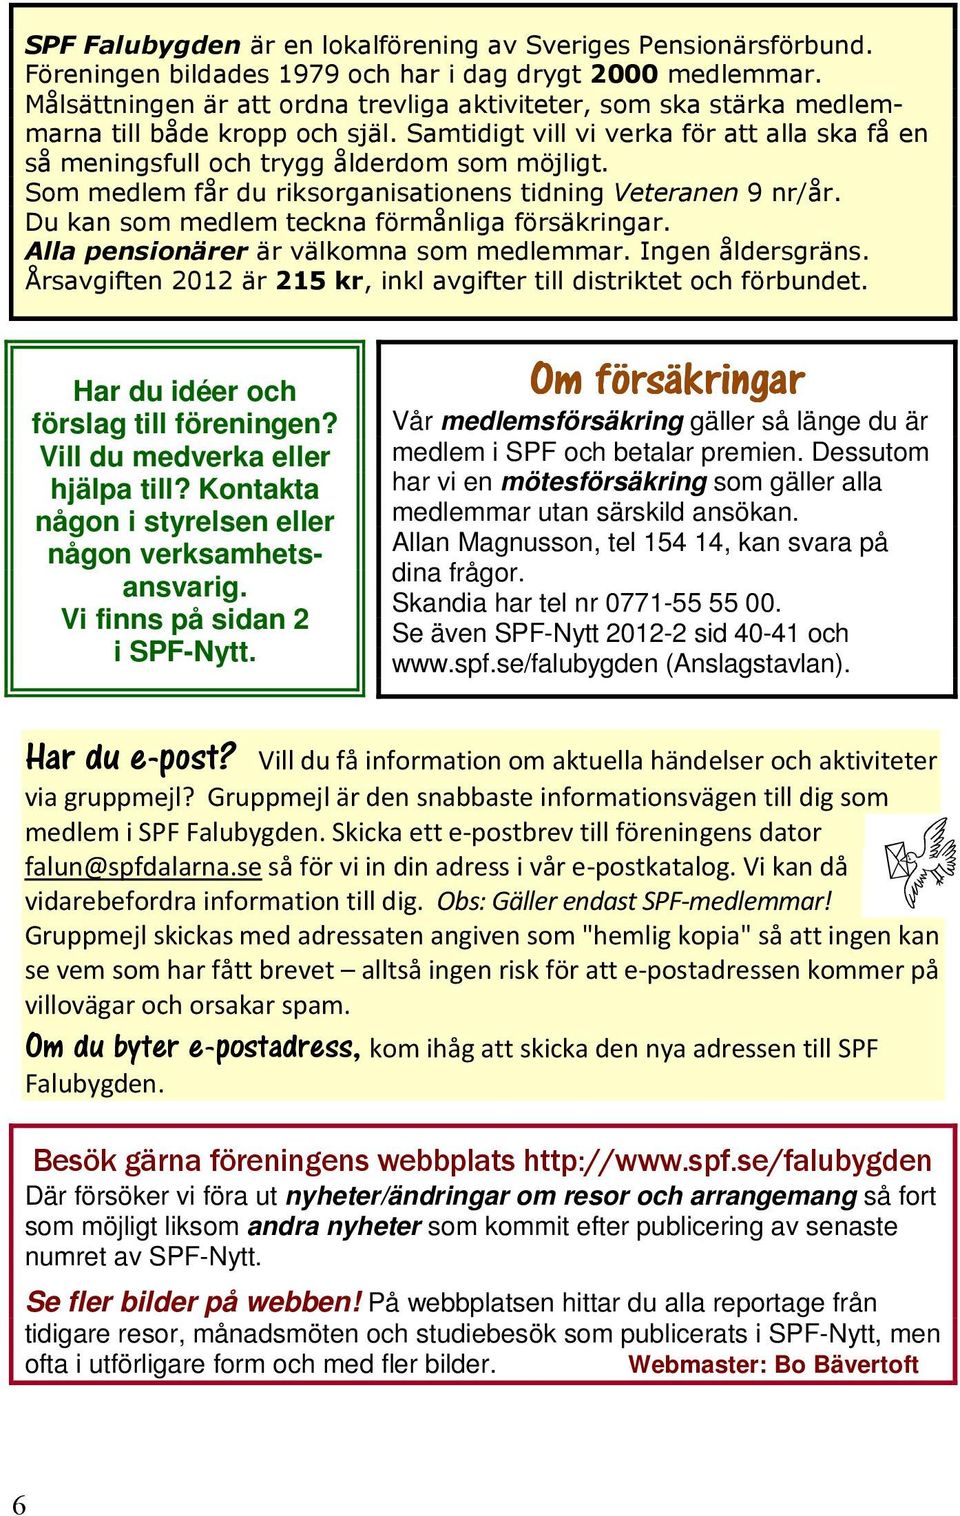 Allan Magnusson, tel 154 14, kan svara på dina frågor. Skandia har tel nr 0771-55 55 00. Se även SPF-Nytt 2012-2 sid 40-41 och www.spf.se/falubygden (Anslagstavlan).